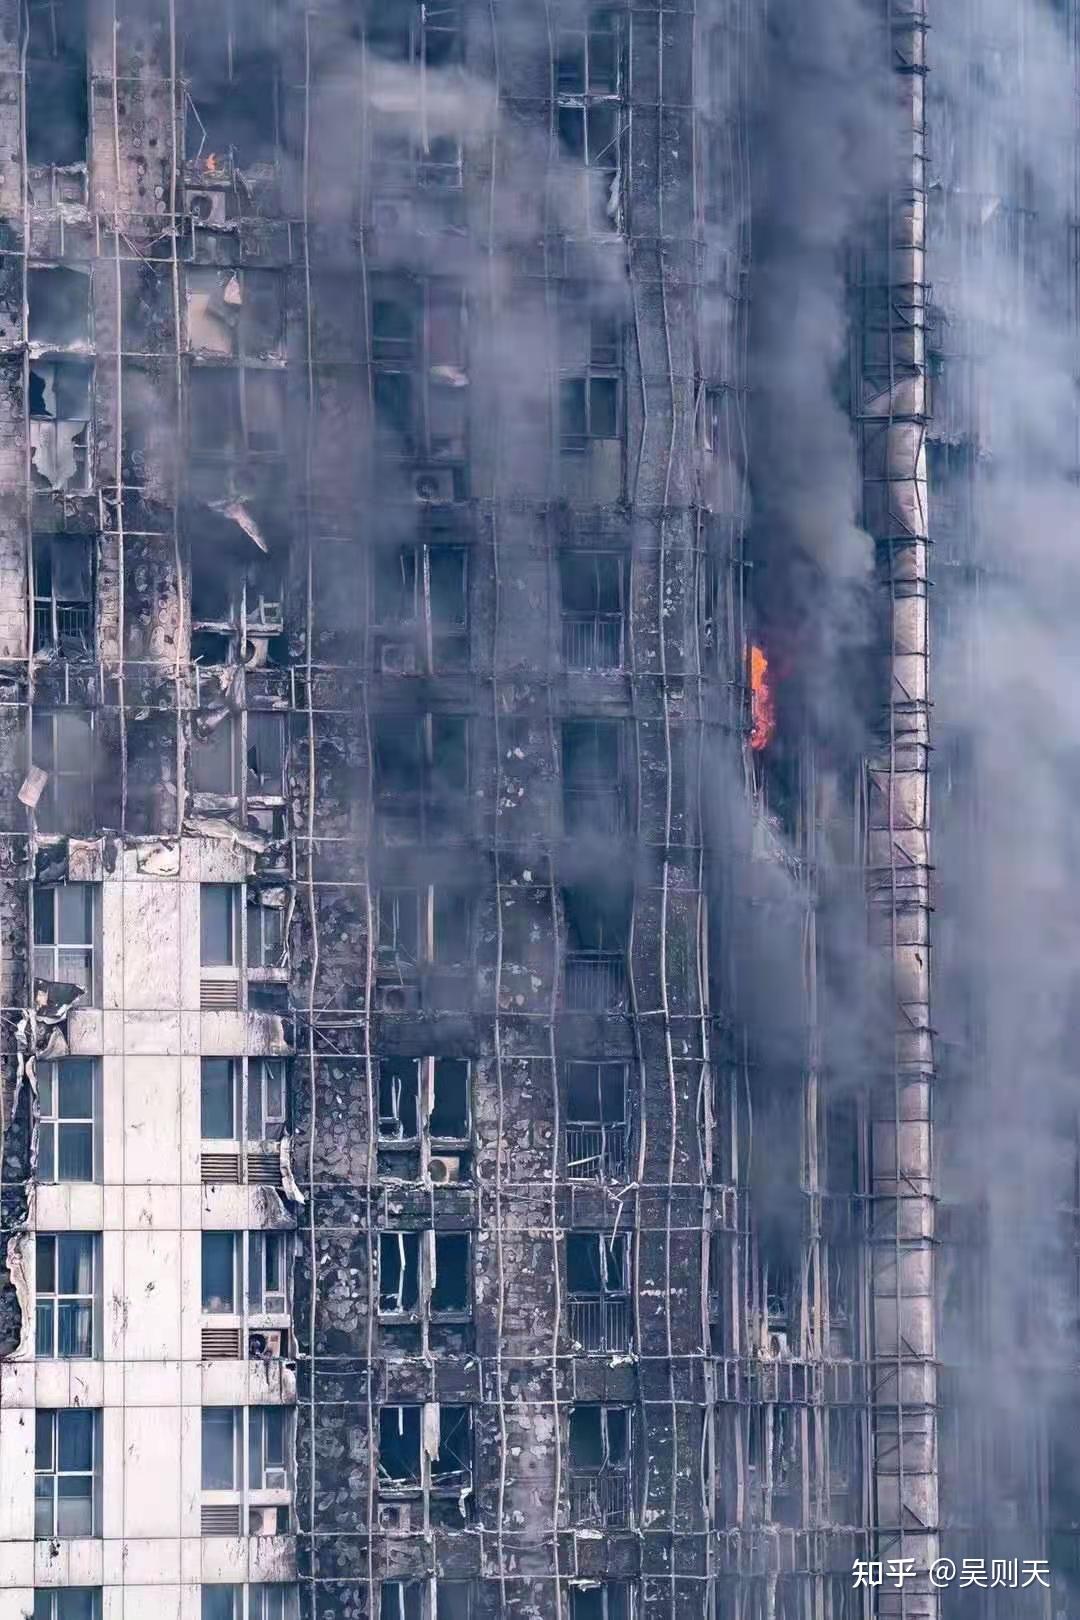 河北石家庄众鑫大厦发生高楼大厦火灾,如何自我逃生与救助,怎么样的